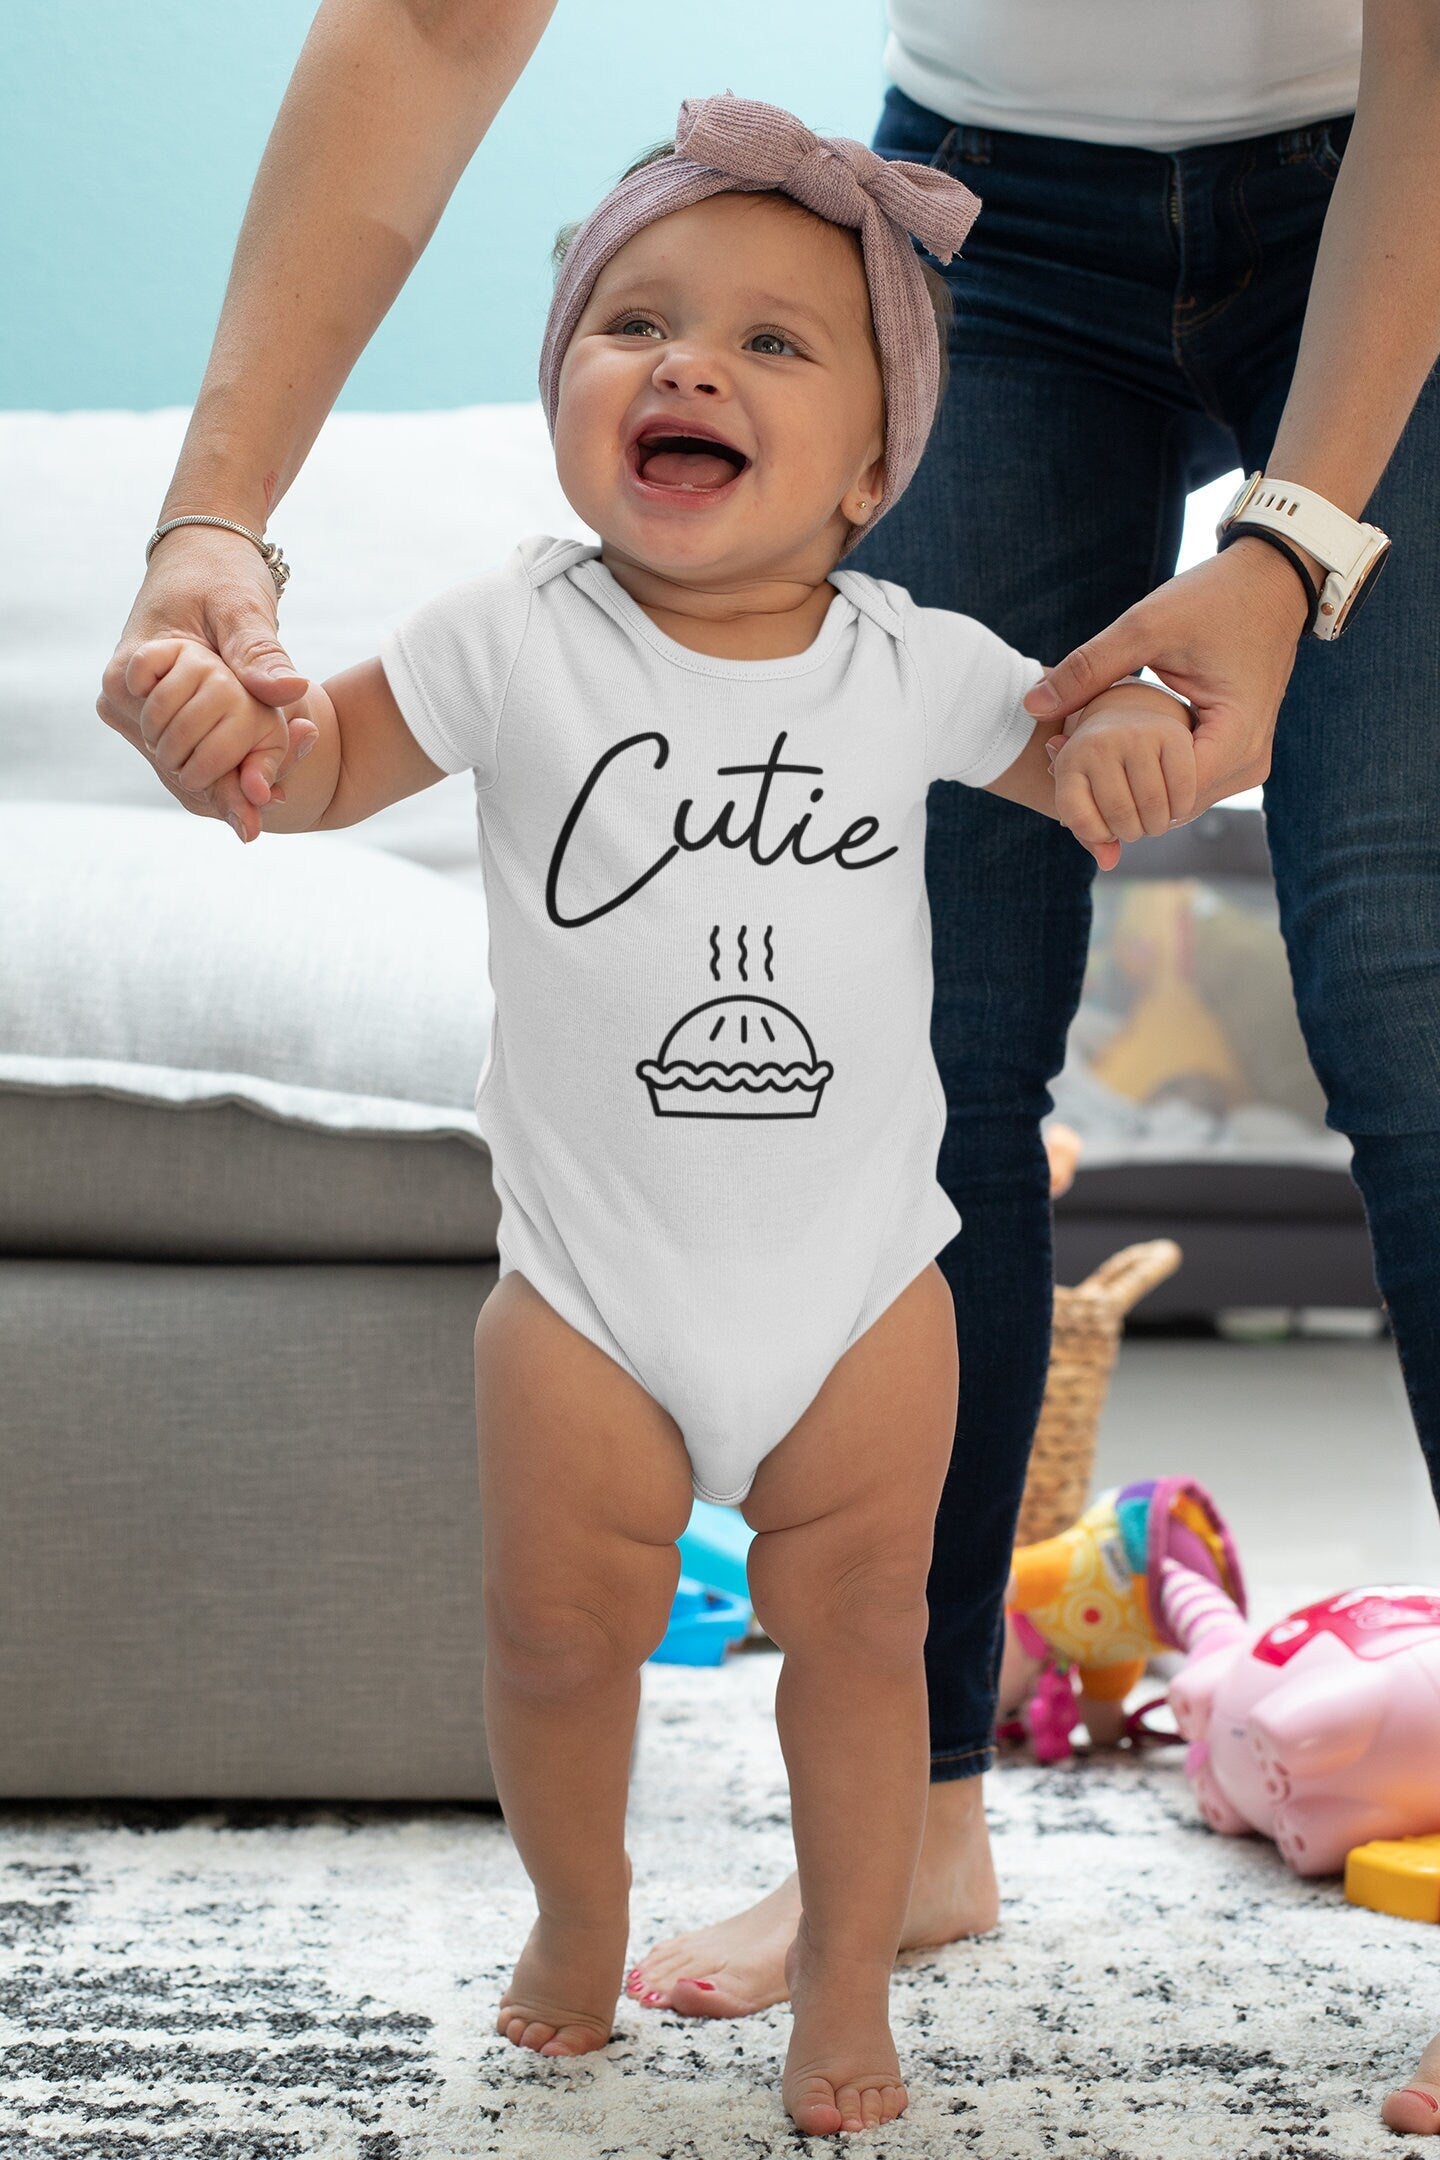 Cutie Pie Baby Vest, Baby Grow, Food Baby Baby Vest, Baby Grow